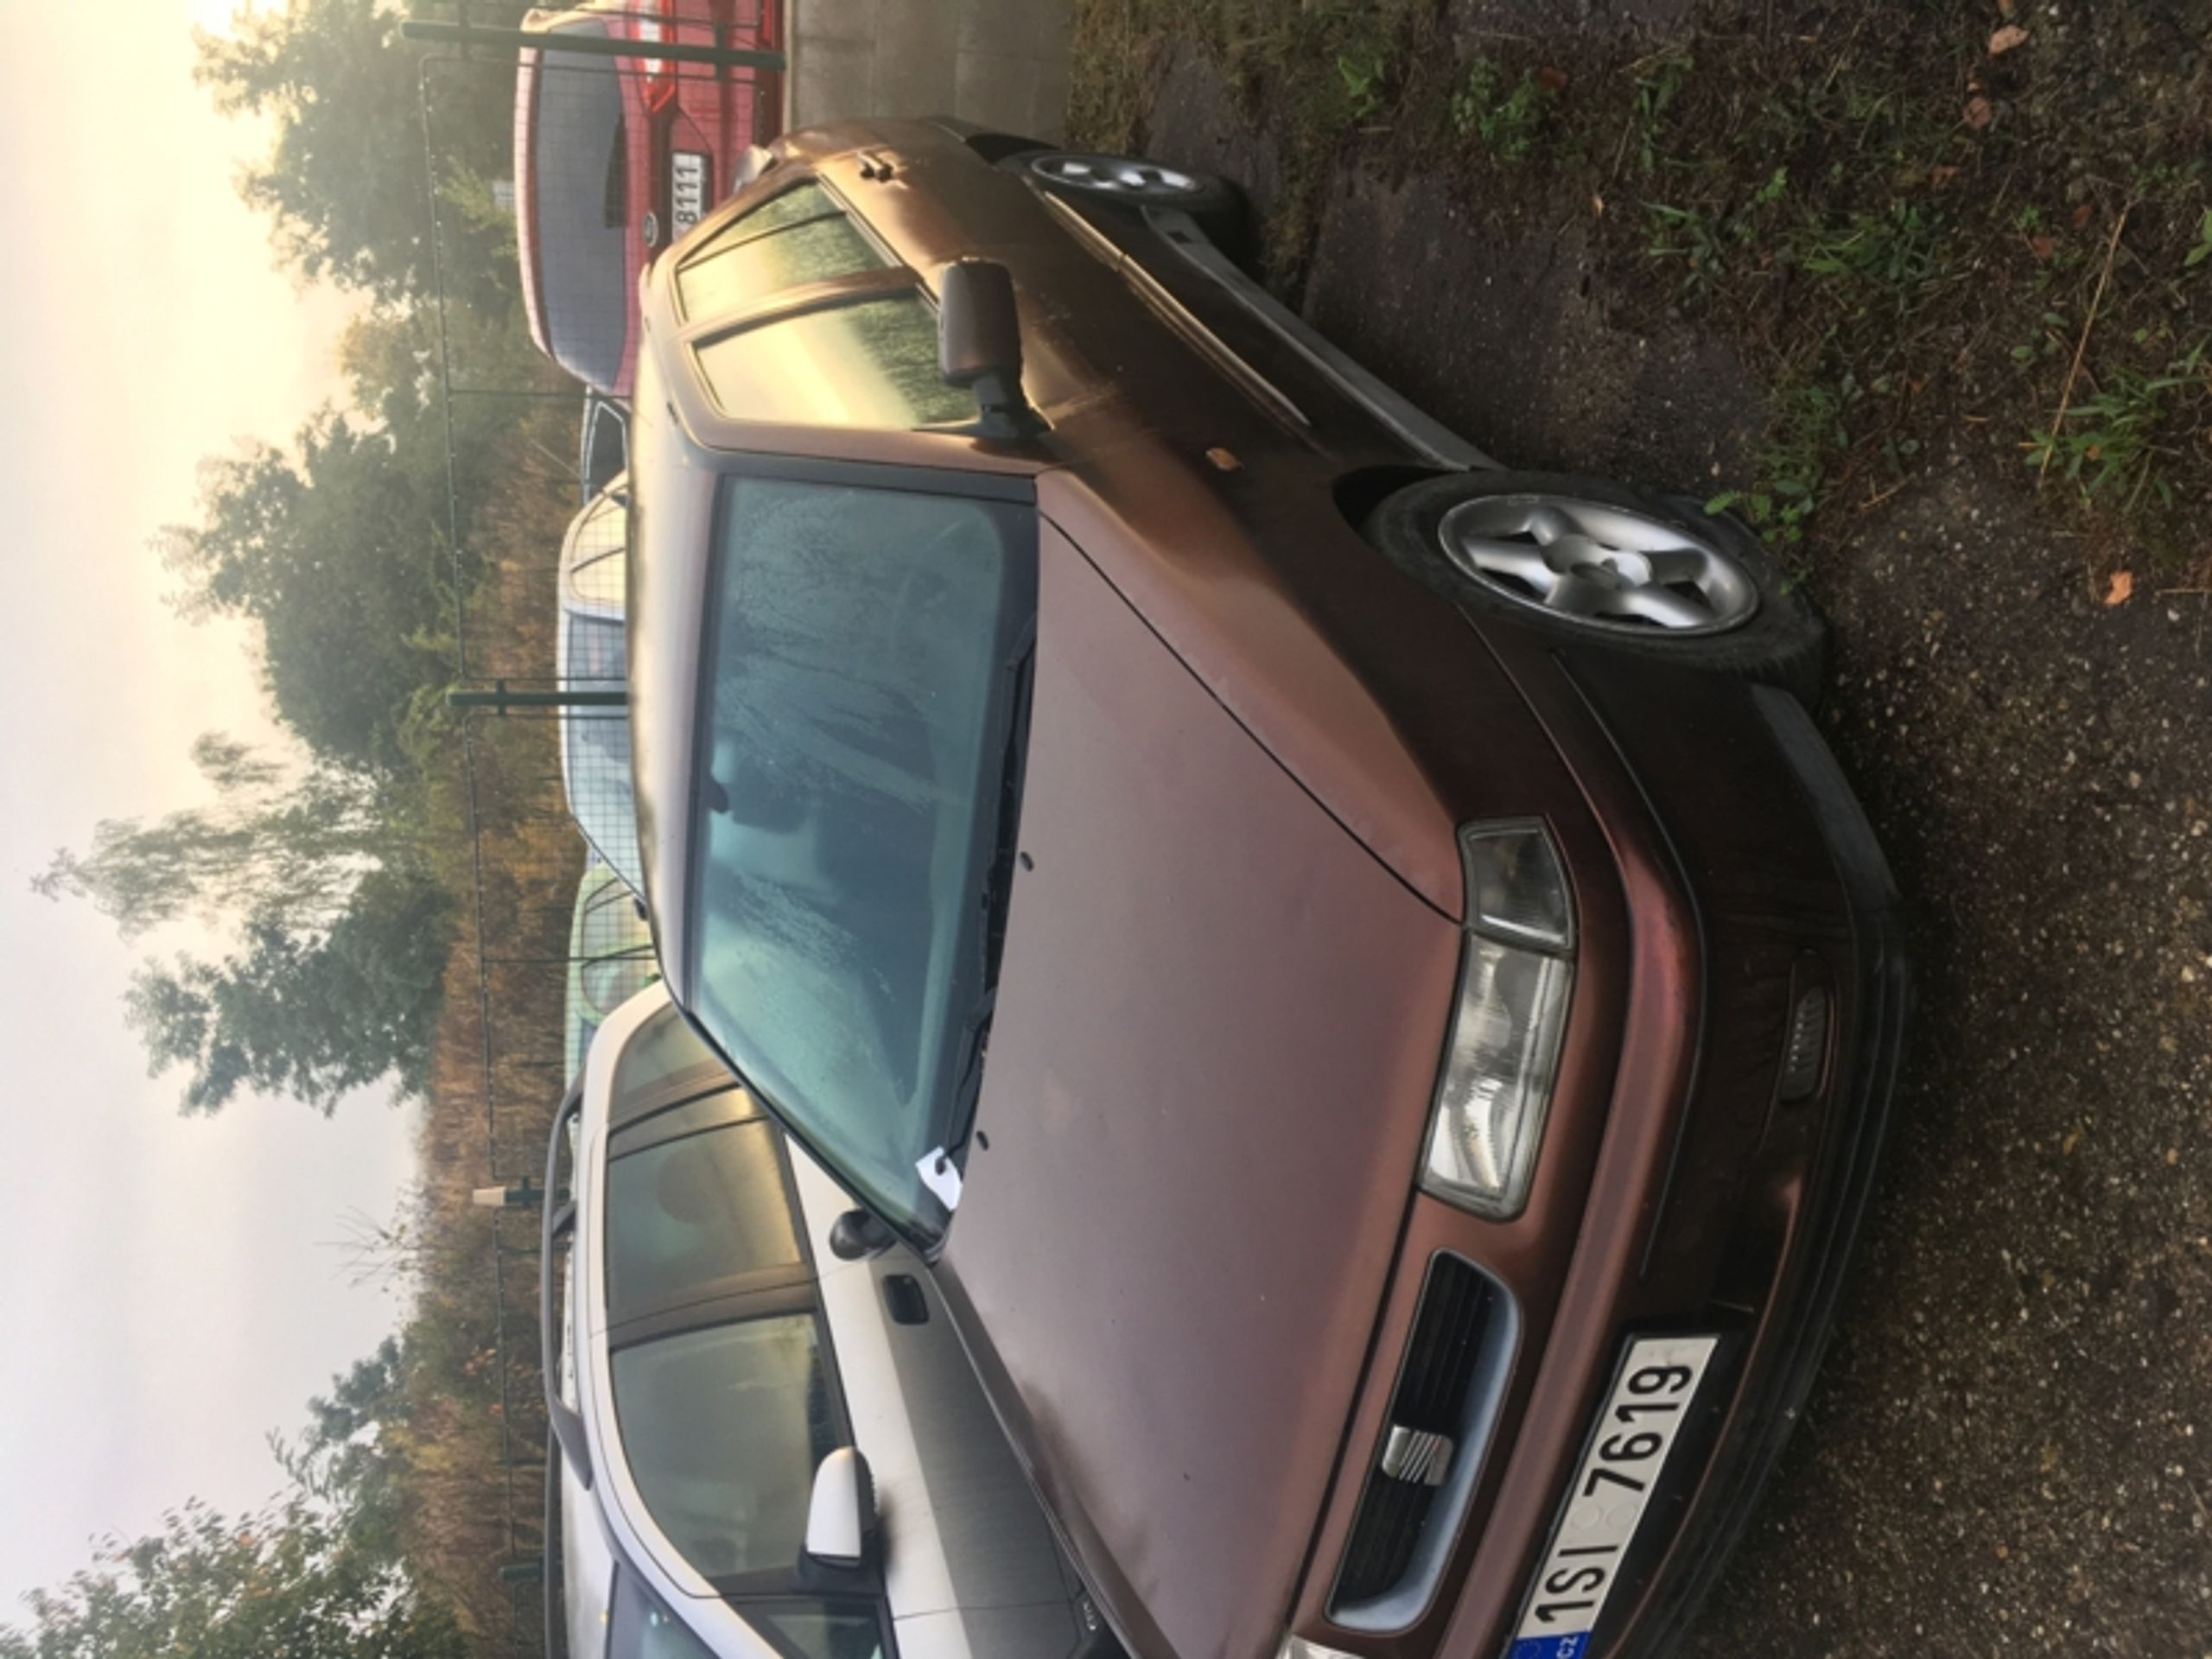 OA Seat Toleda - odhadní cena 900 Kč, nejnižší podání 300 Kč - Aukce aut, která blokovala ulice Ústí nad Labem (16/16)